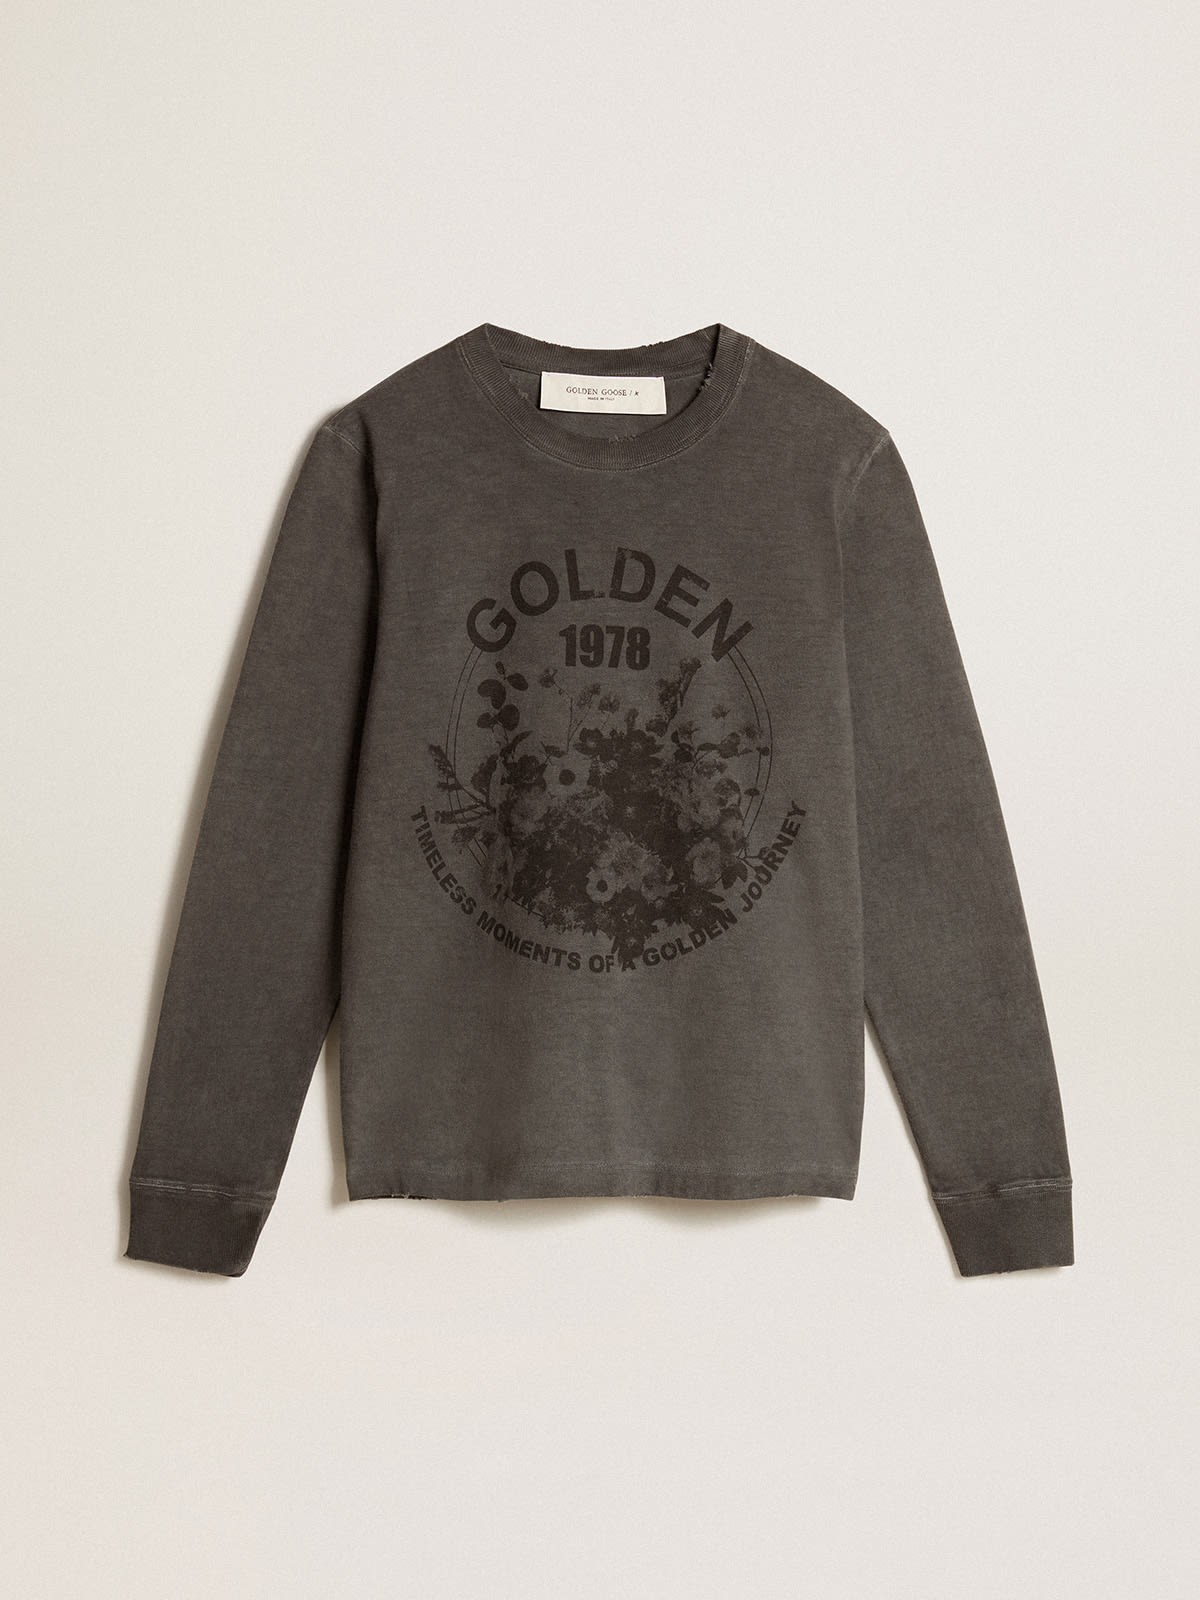 Golden Goose - T-shirt in cotone color antracite con stampa sul davanti in 